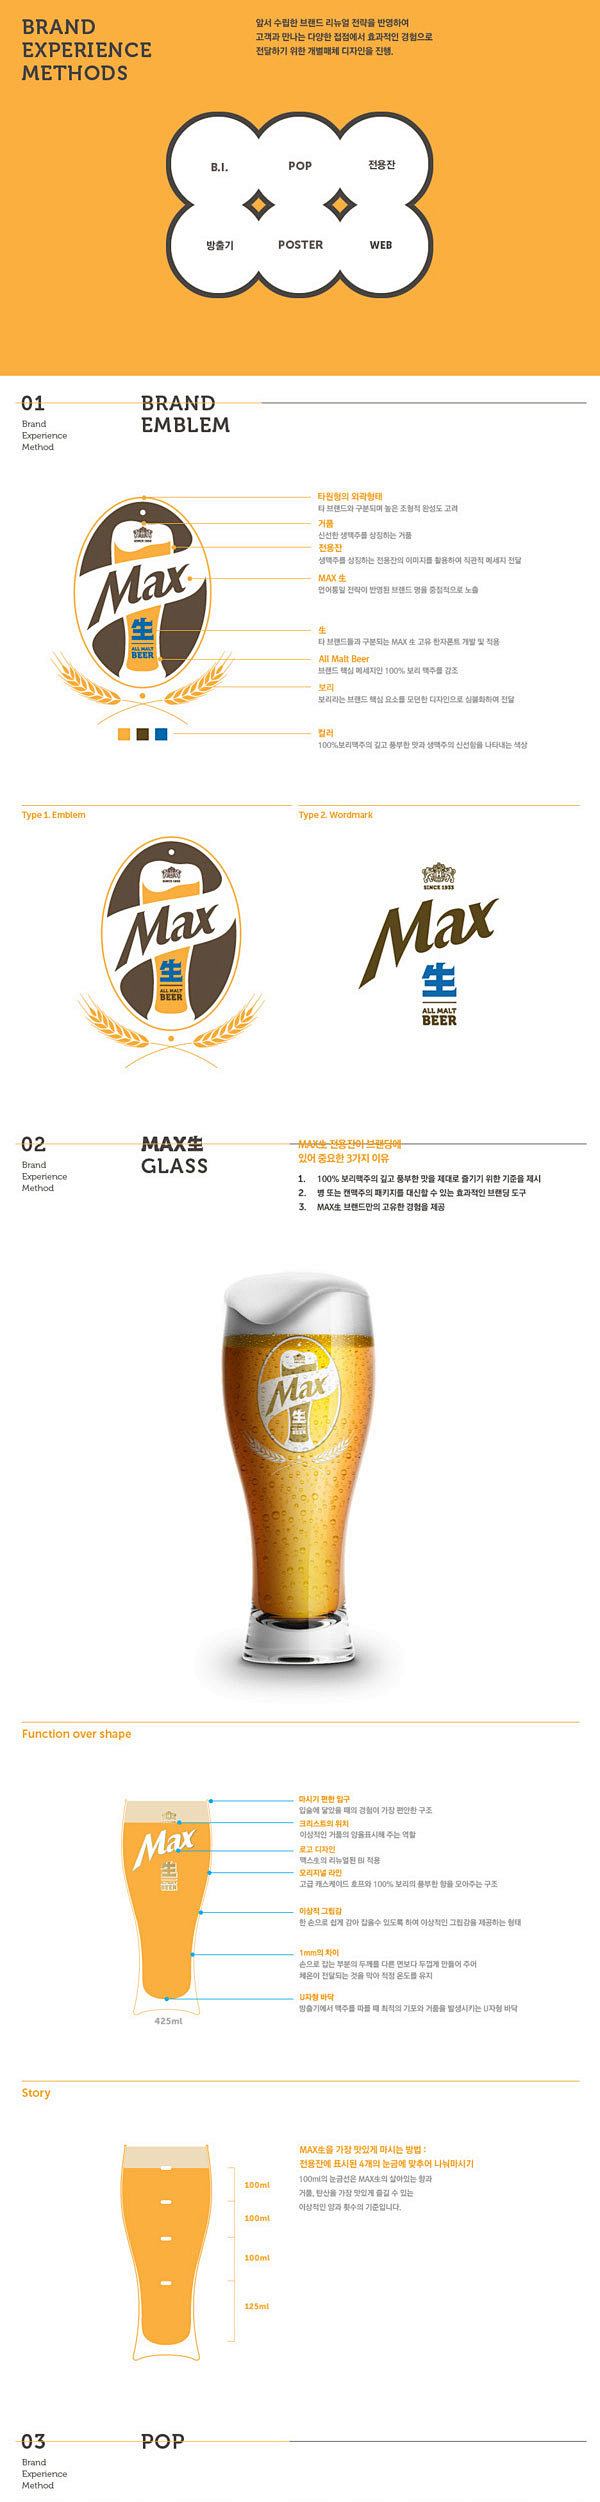 韩国HITE MAX生啤酒品牌设计 - ...